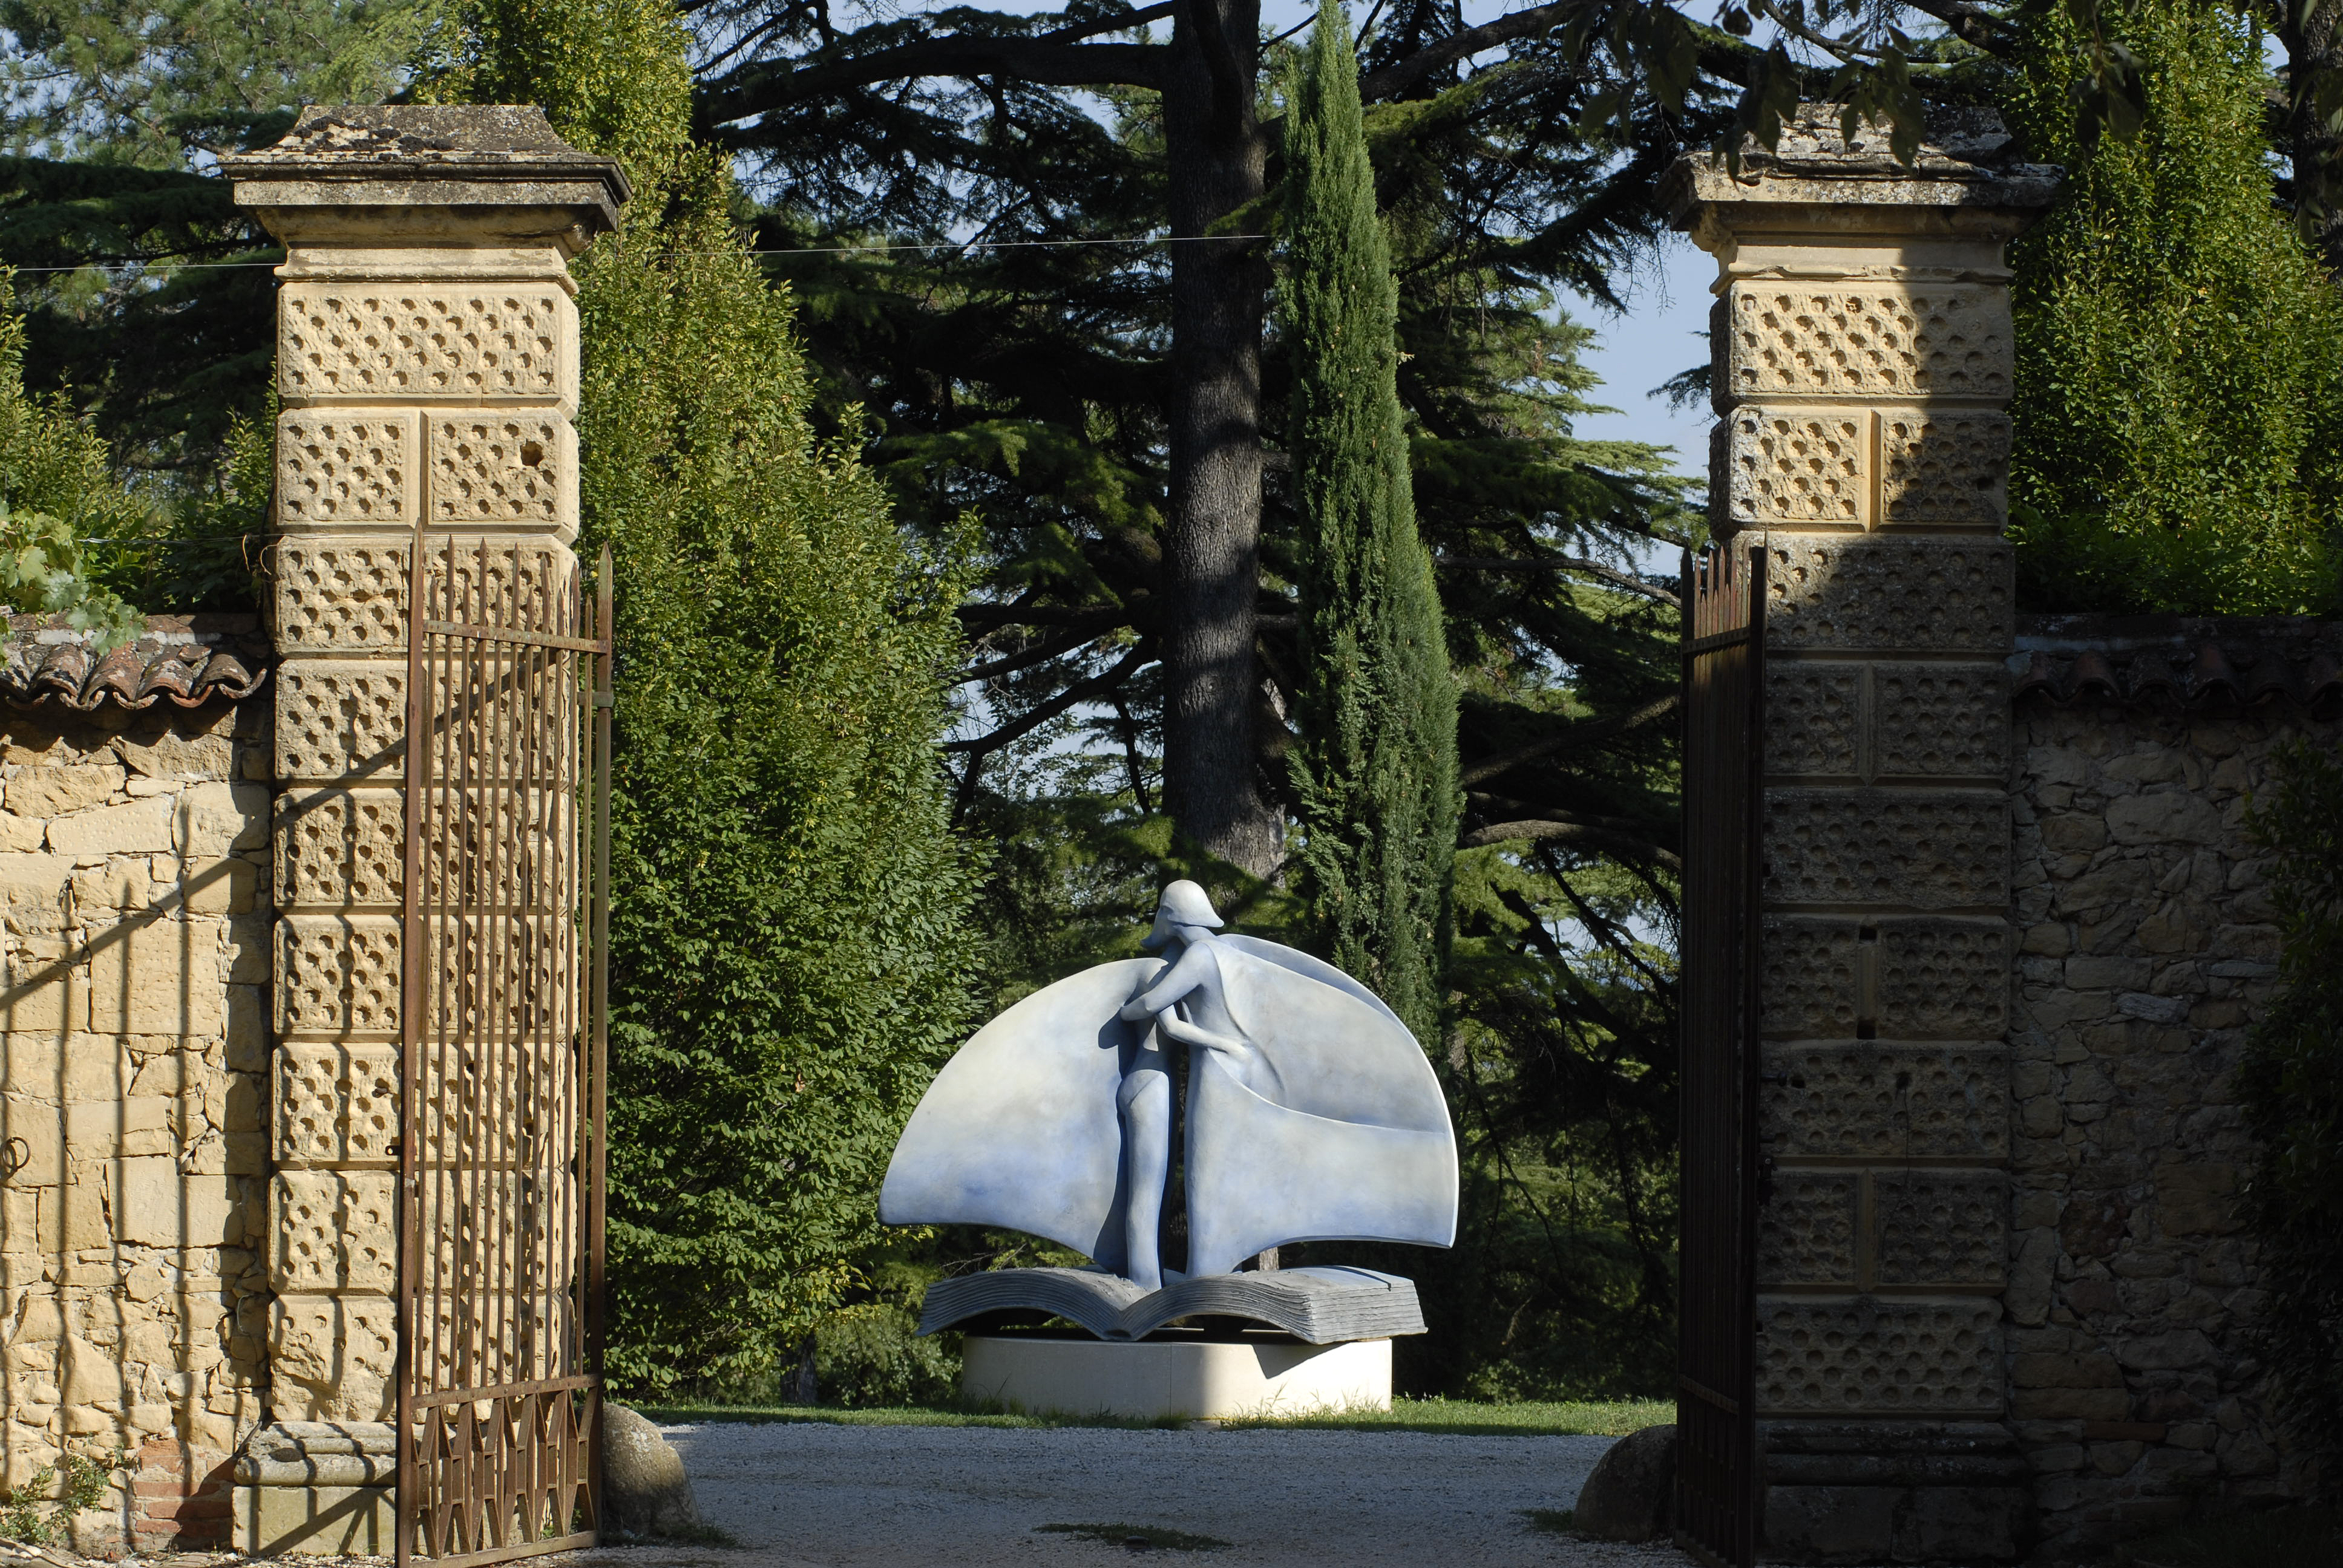 Vista dal cancello dell'entrata di una scultura in pietra di due figure abbracciate su di un piedistallo a forma di libro, nel Parco della Villa di Montruglio. Sullo sfondo degli alberi.